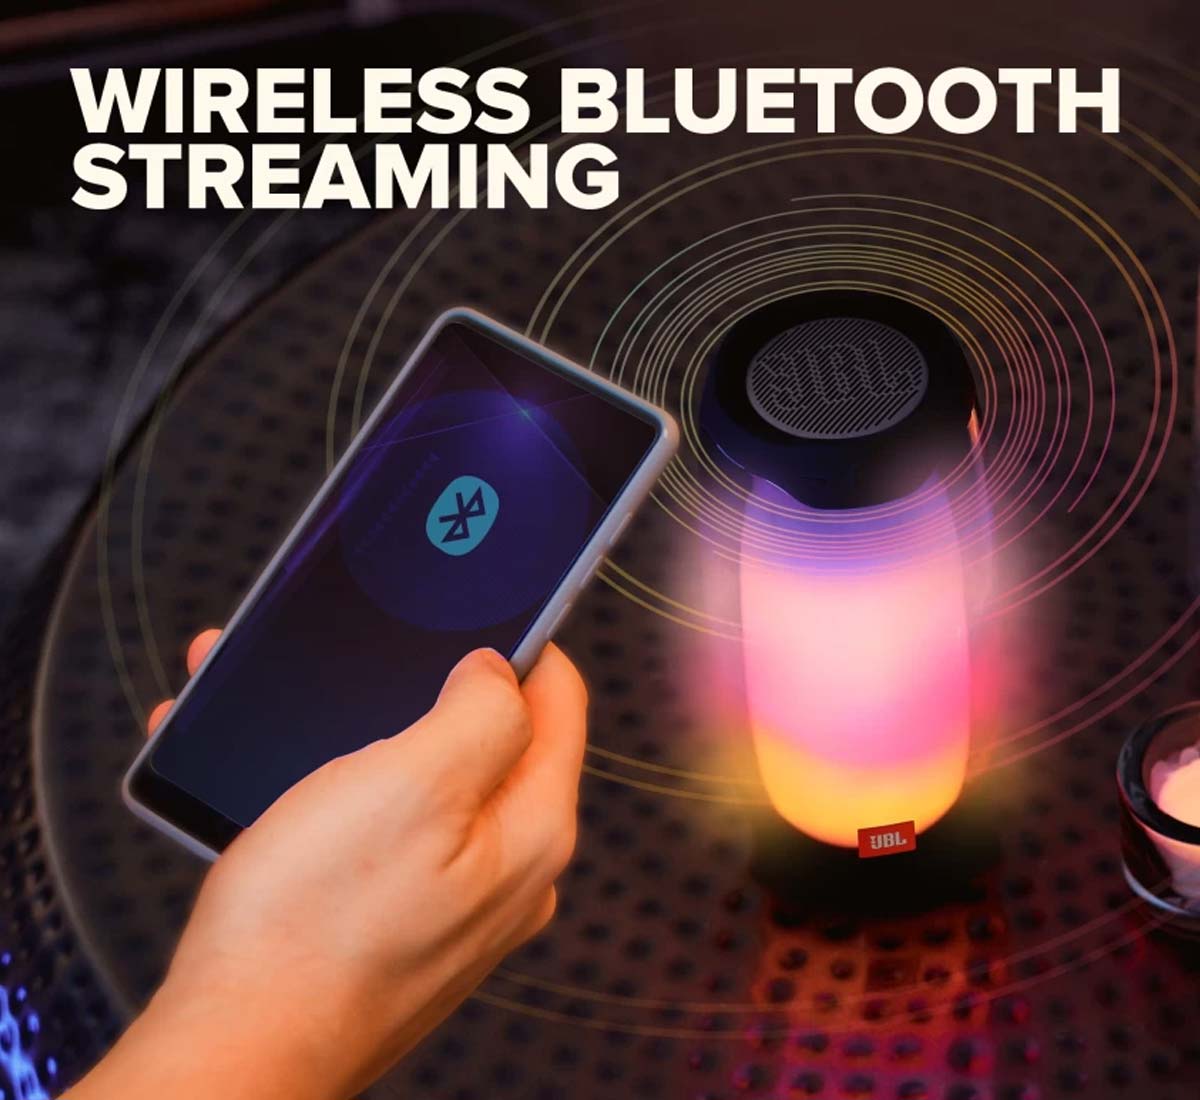 Loa hỗ trợ kết nối không dây với công nghệ Bluetooth 4.2 tiên tiến